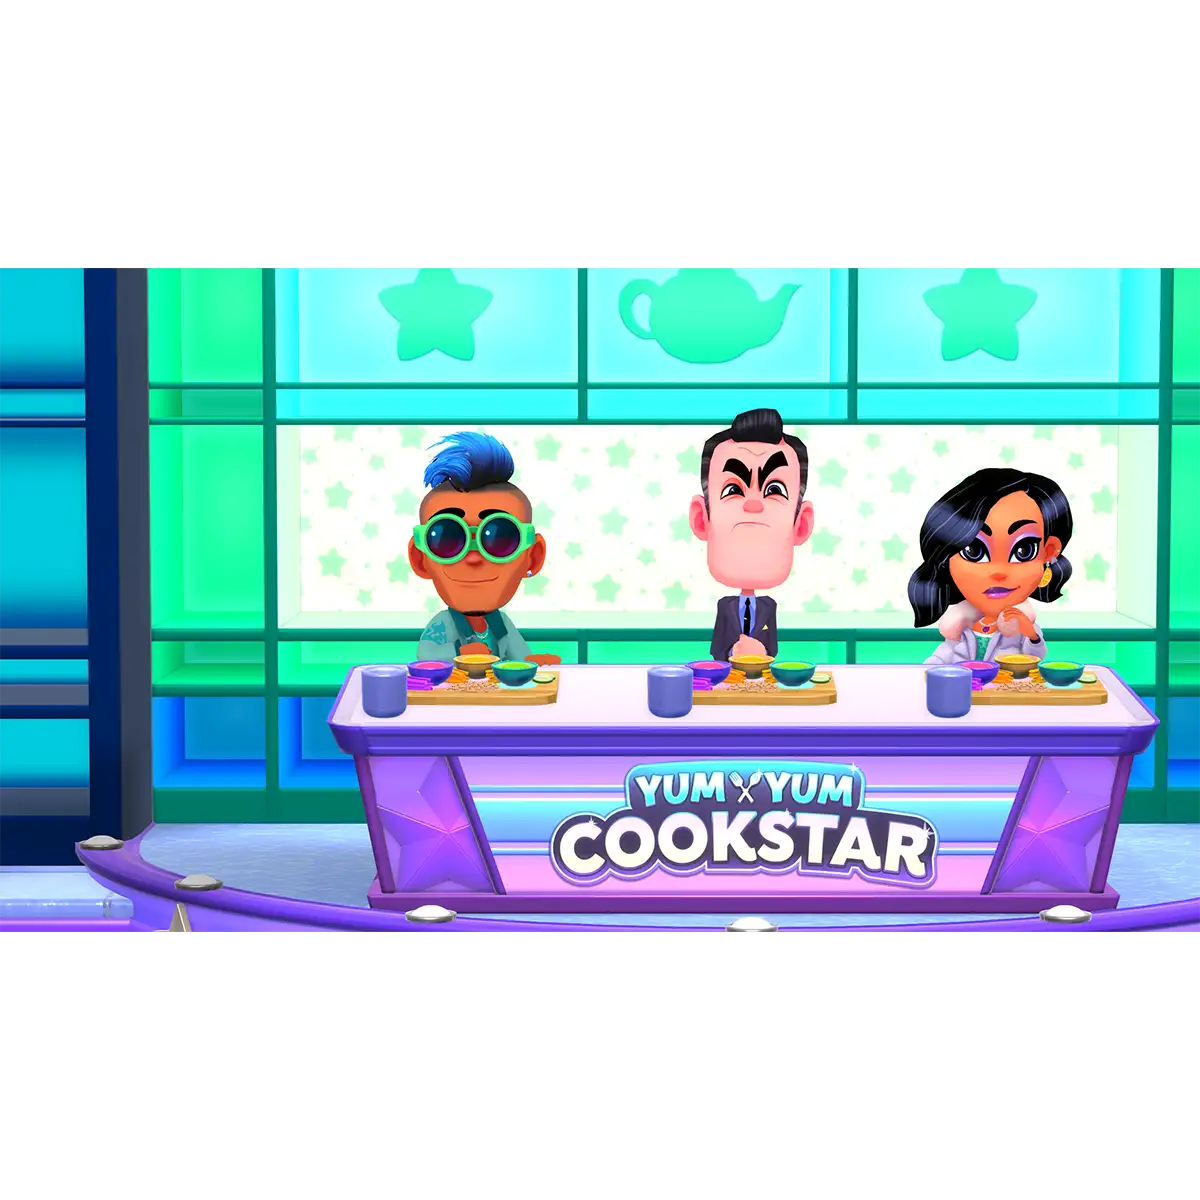 Yum Yum Cookstar (Xbox One) Image 8